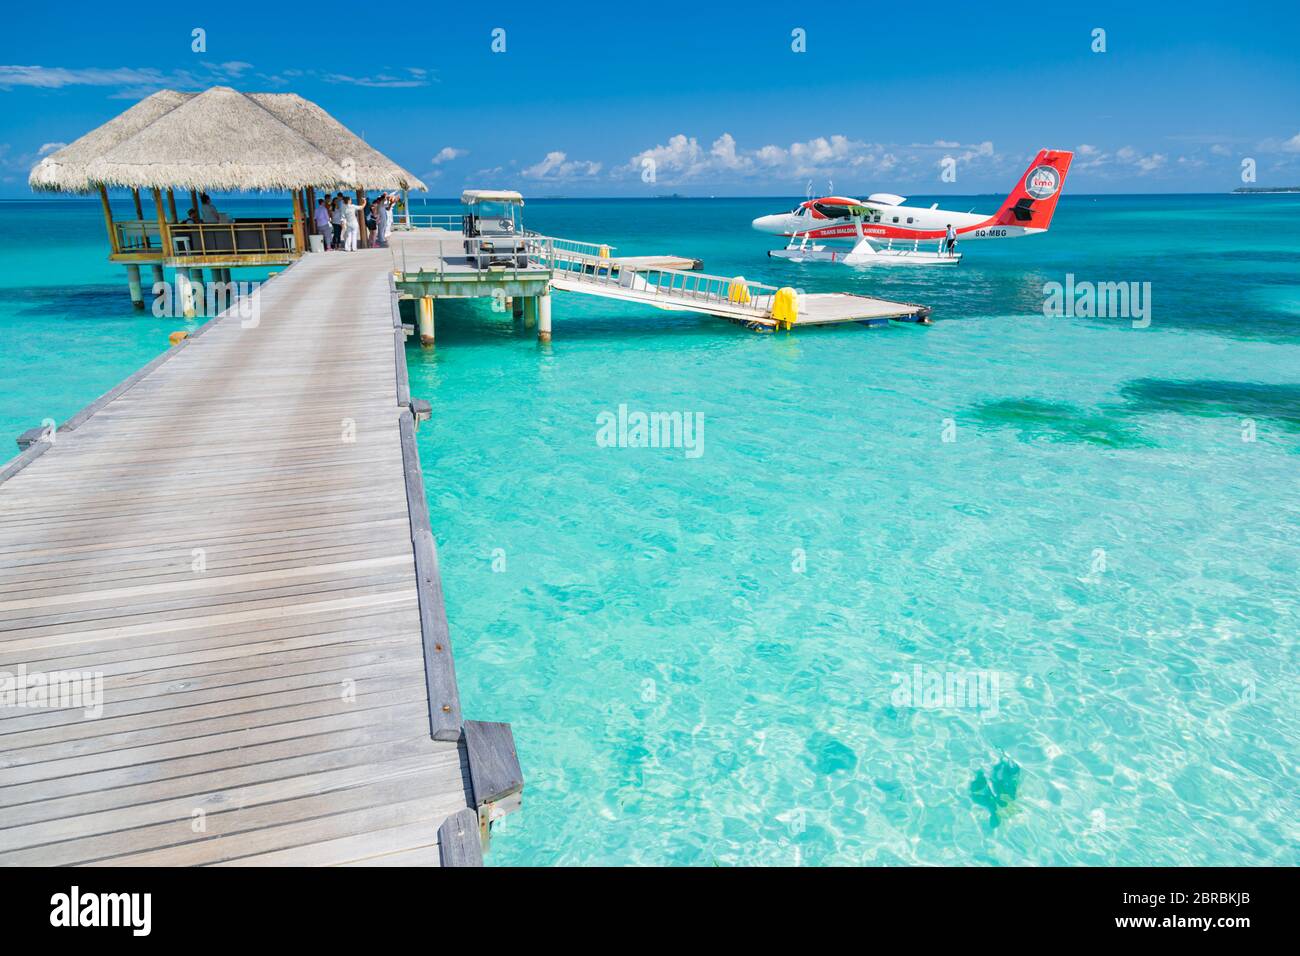 05.19.2019 - Ari Atoll, Maldives: Scène exotique avec l'hydravion Trans Maldivian Airways sur le débarquement maritime des Maldives. Concept de vacances aux Maldives Banque D'Images